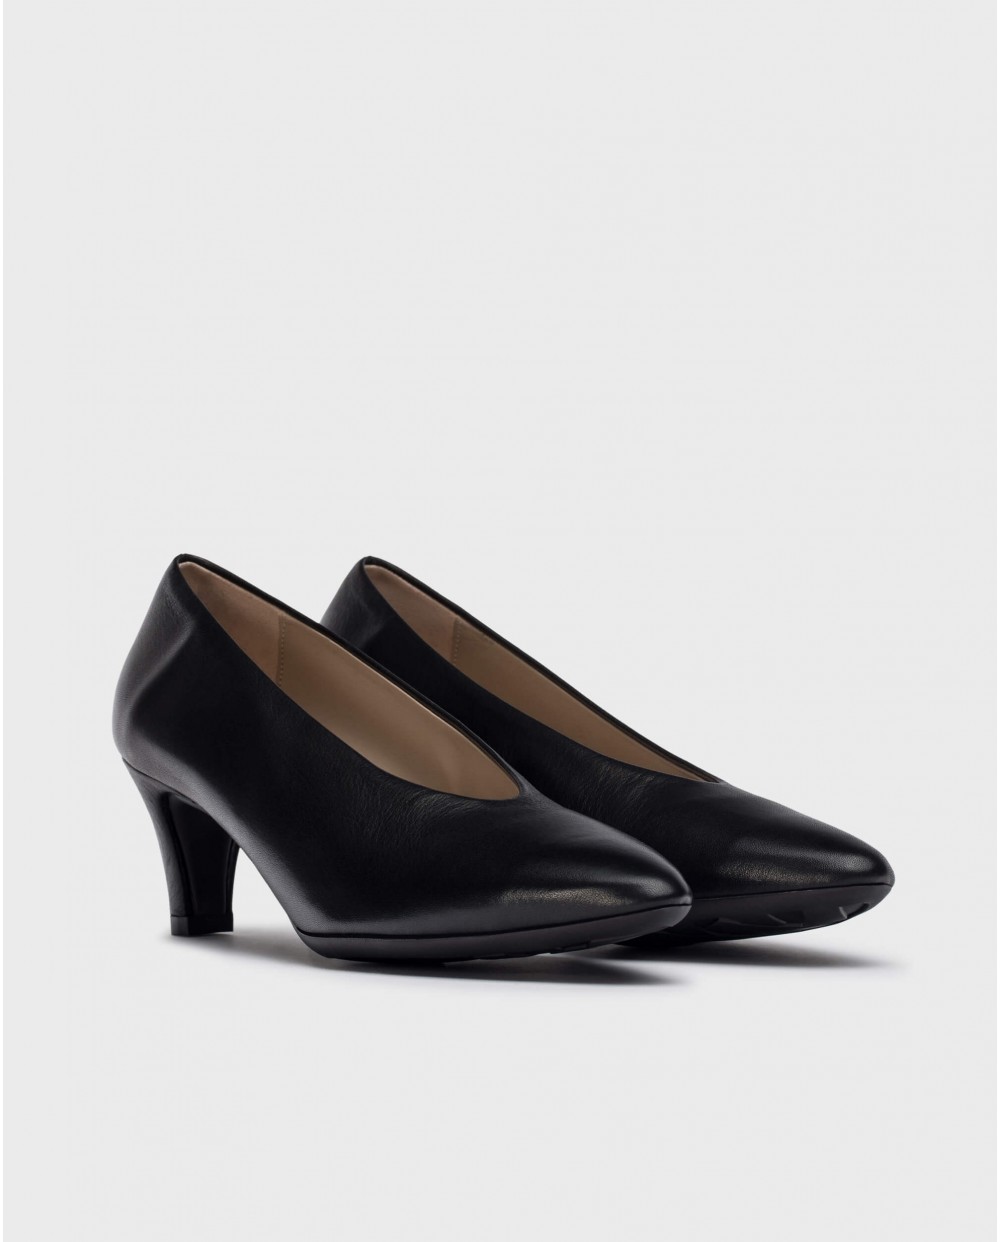 Wonders-Heels-Black Trui heeled shoes